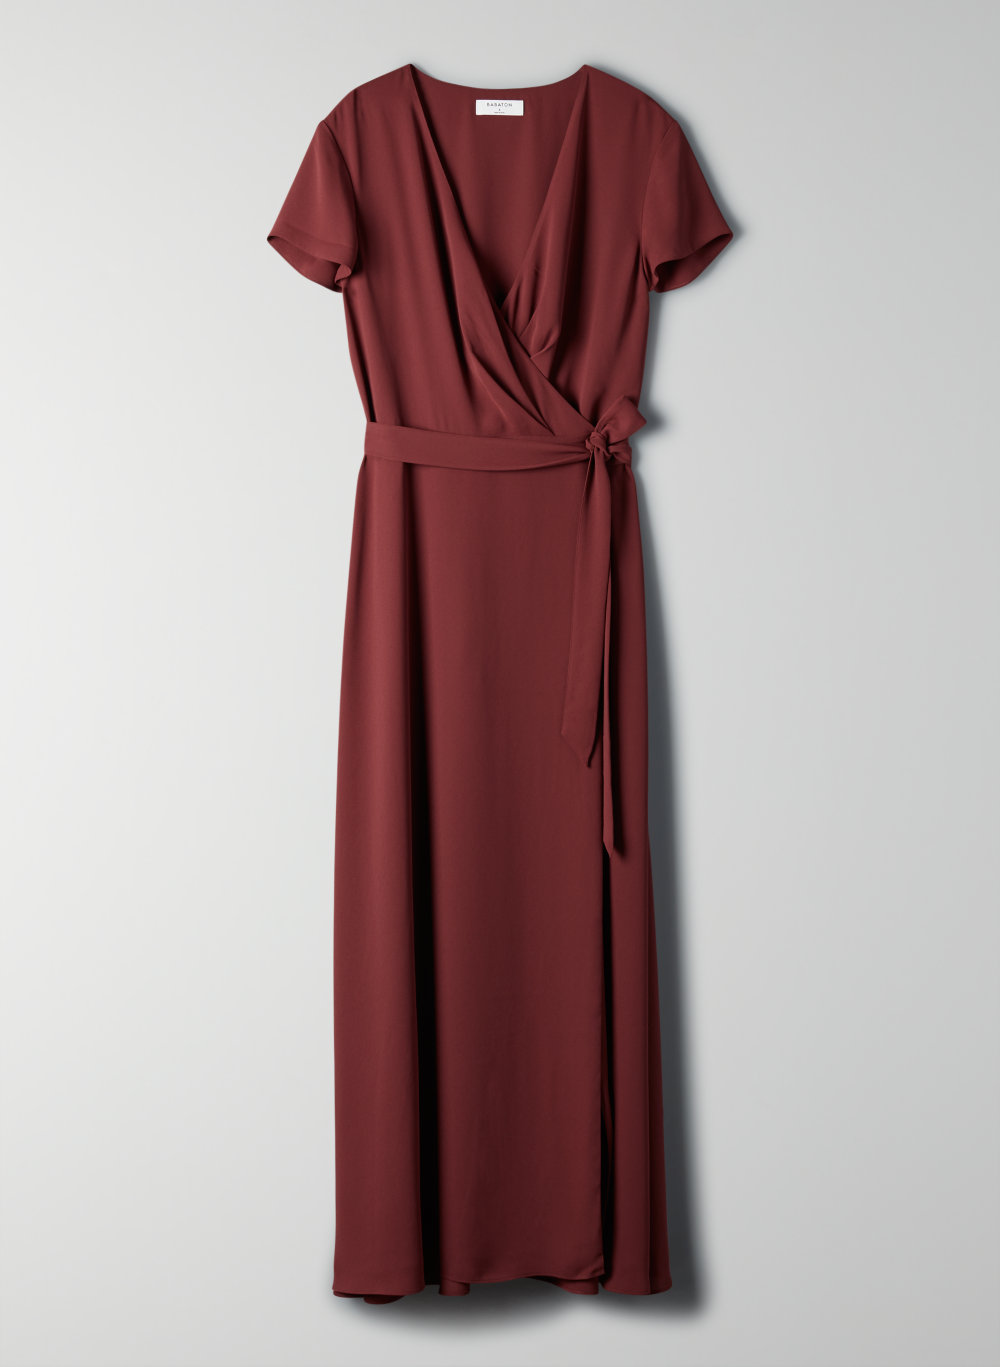 aritzia burgundy dress